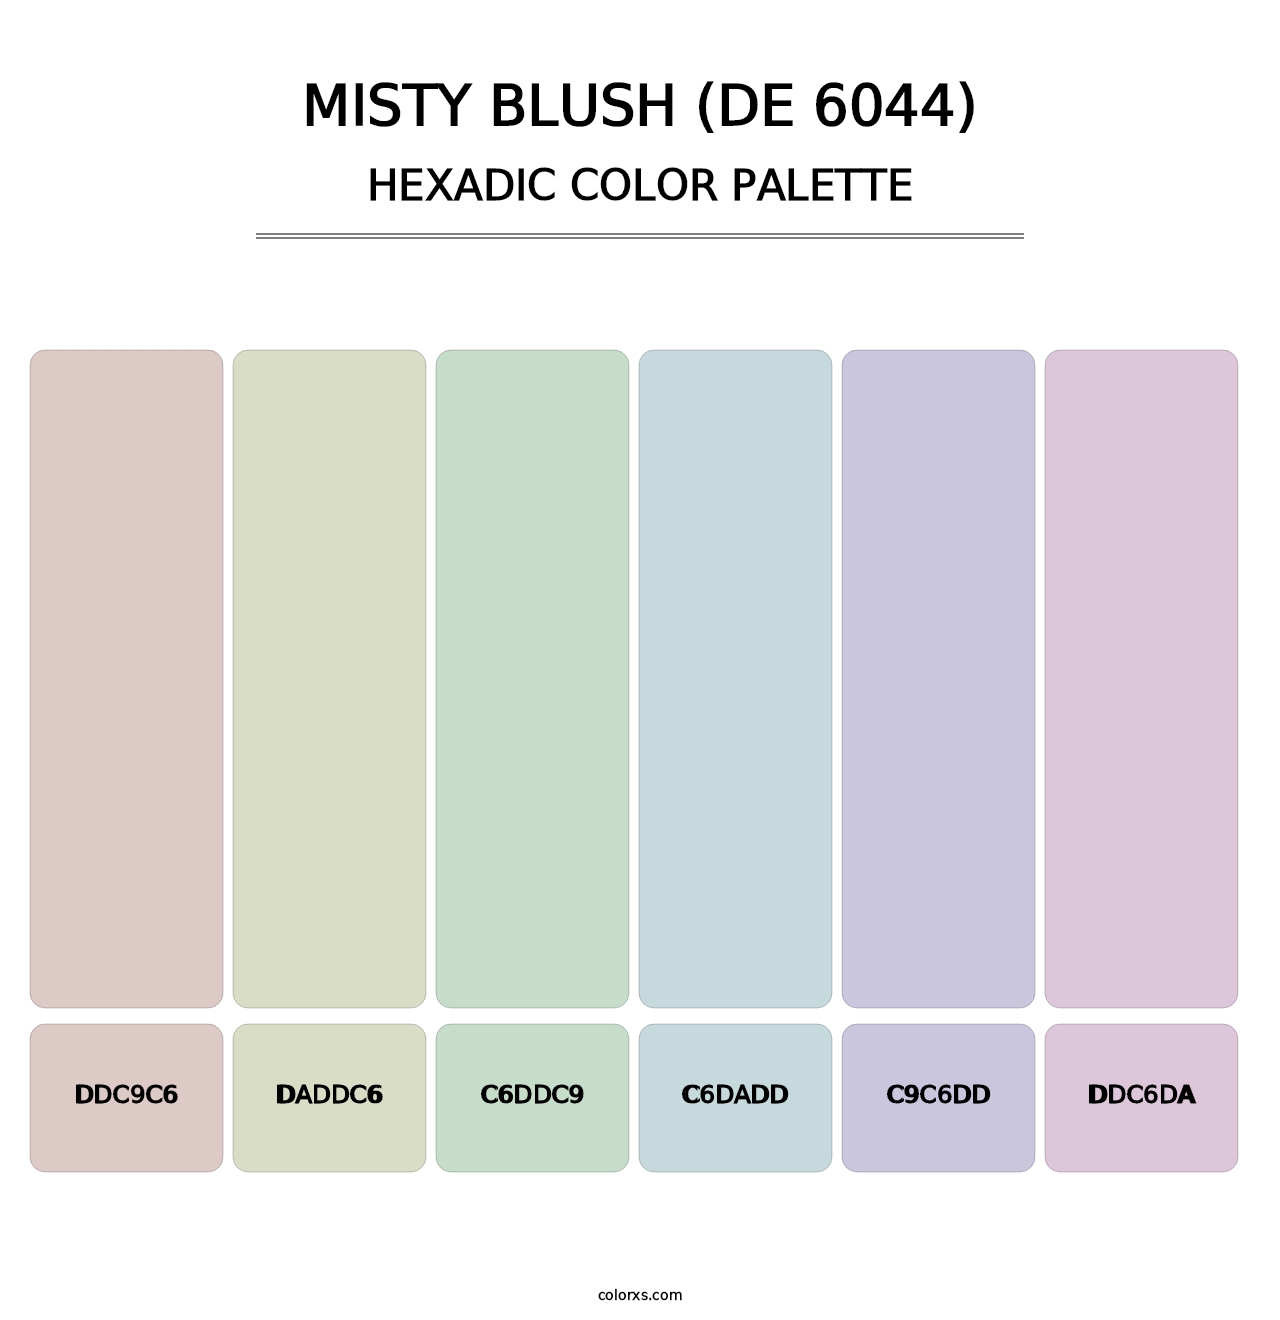 Misty Blush (DE 6044) - Hexadic Color Palette